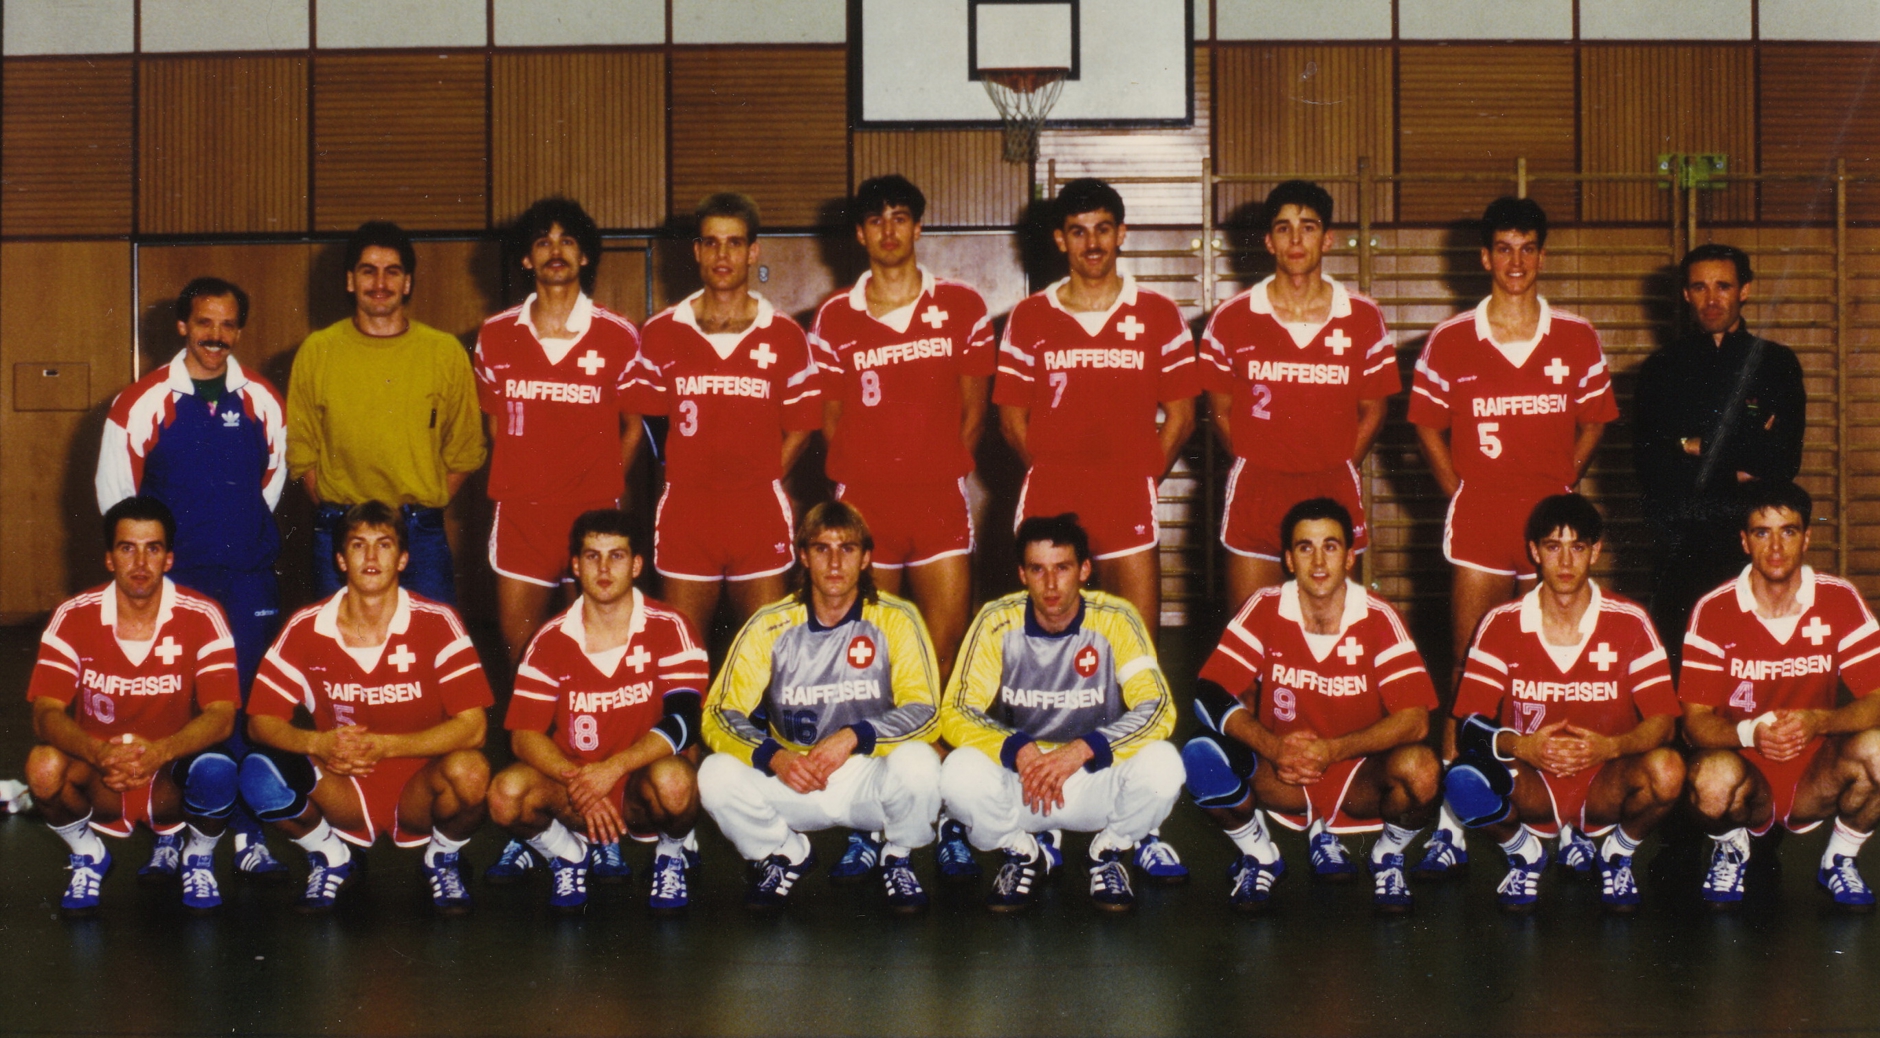 1990 Teamfoto Männer Nati.jpg